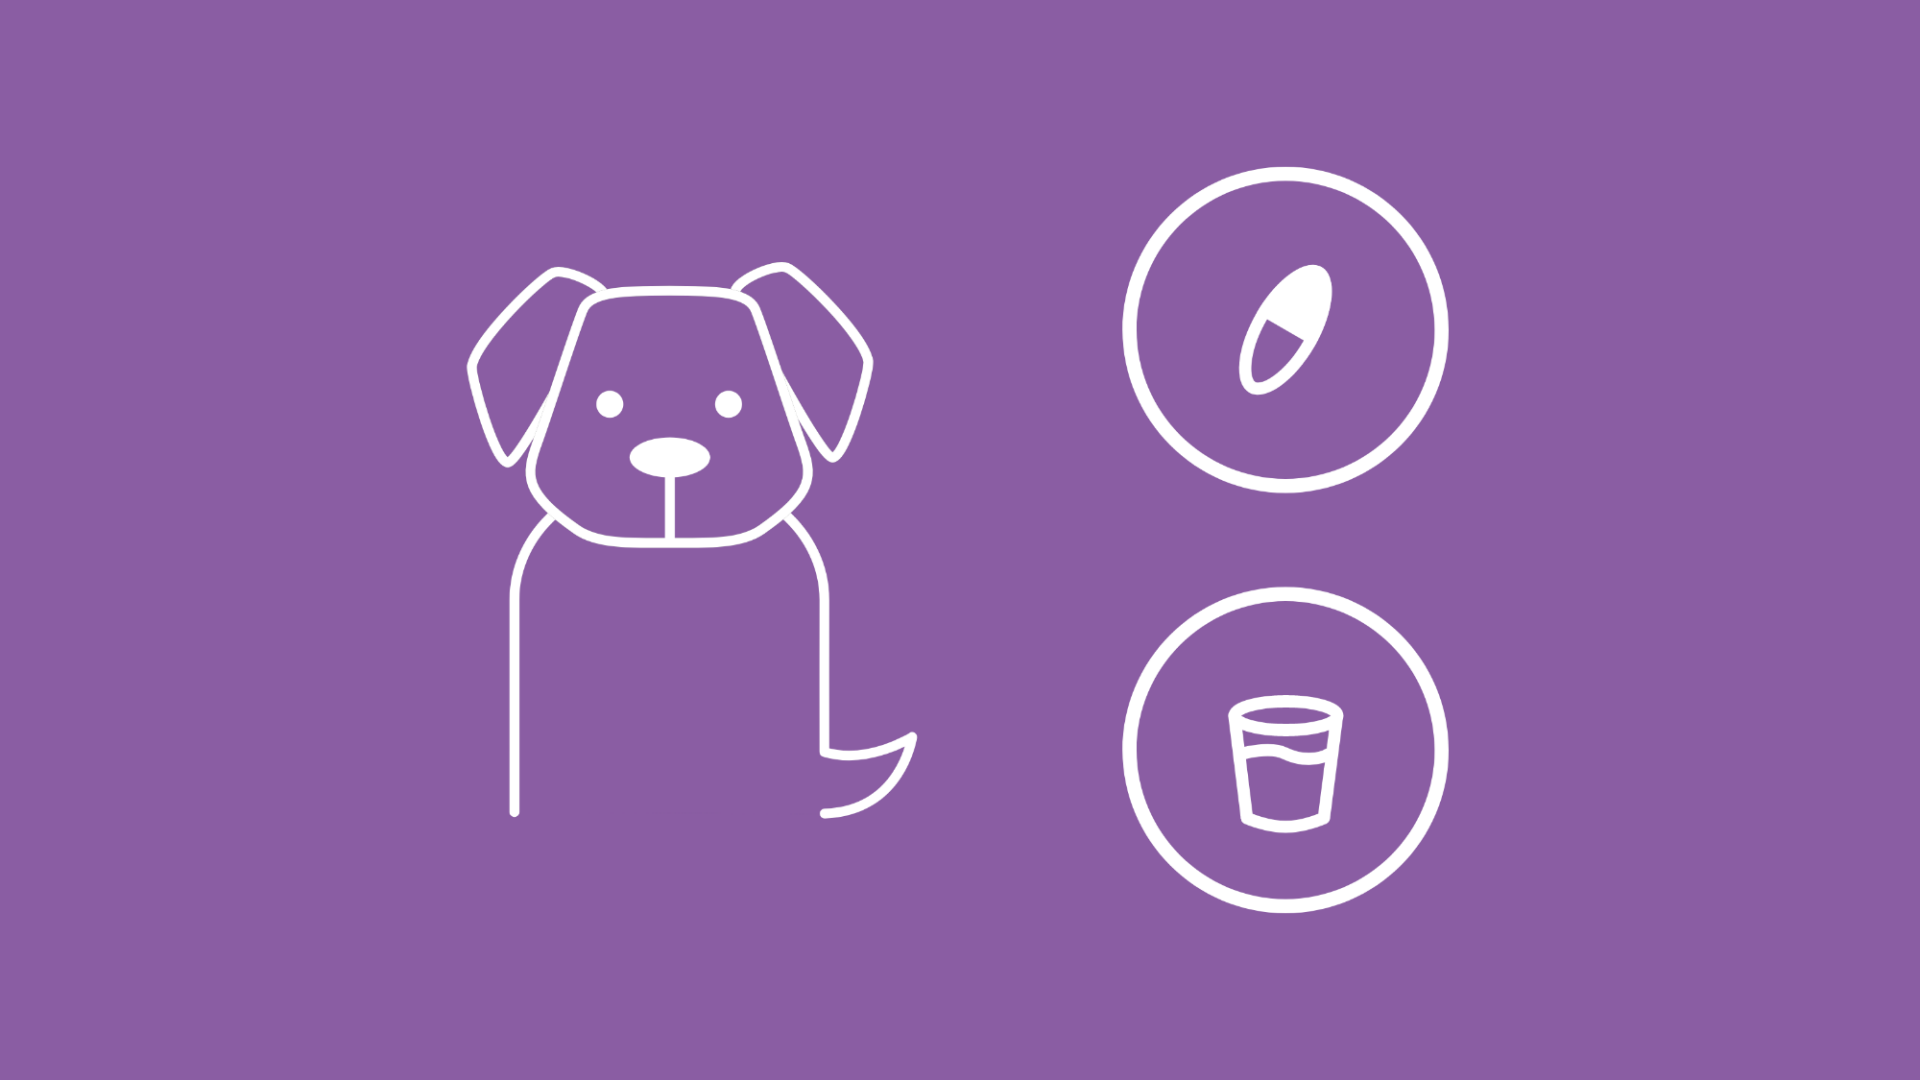 Die Grafik zeigt einen Hund, neben dem unter einer Lupe ein Wurm abgebildet ist. Daneben ist jeweils in einem Kreis eine Wurmtablette, ein Glas Kokosöl und ein Fragezeichen zu sehen. 